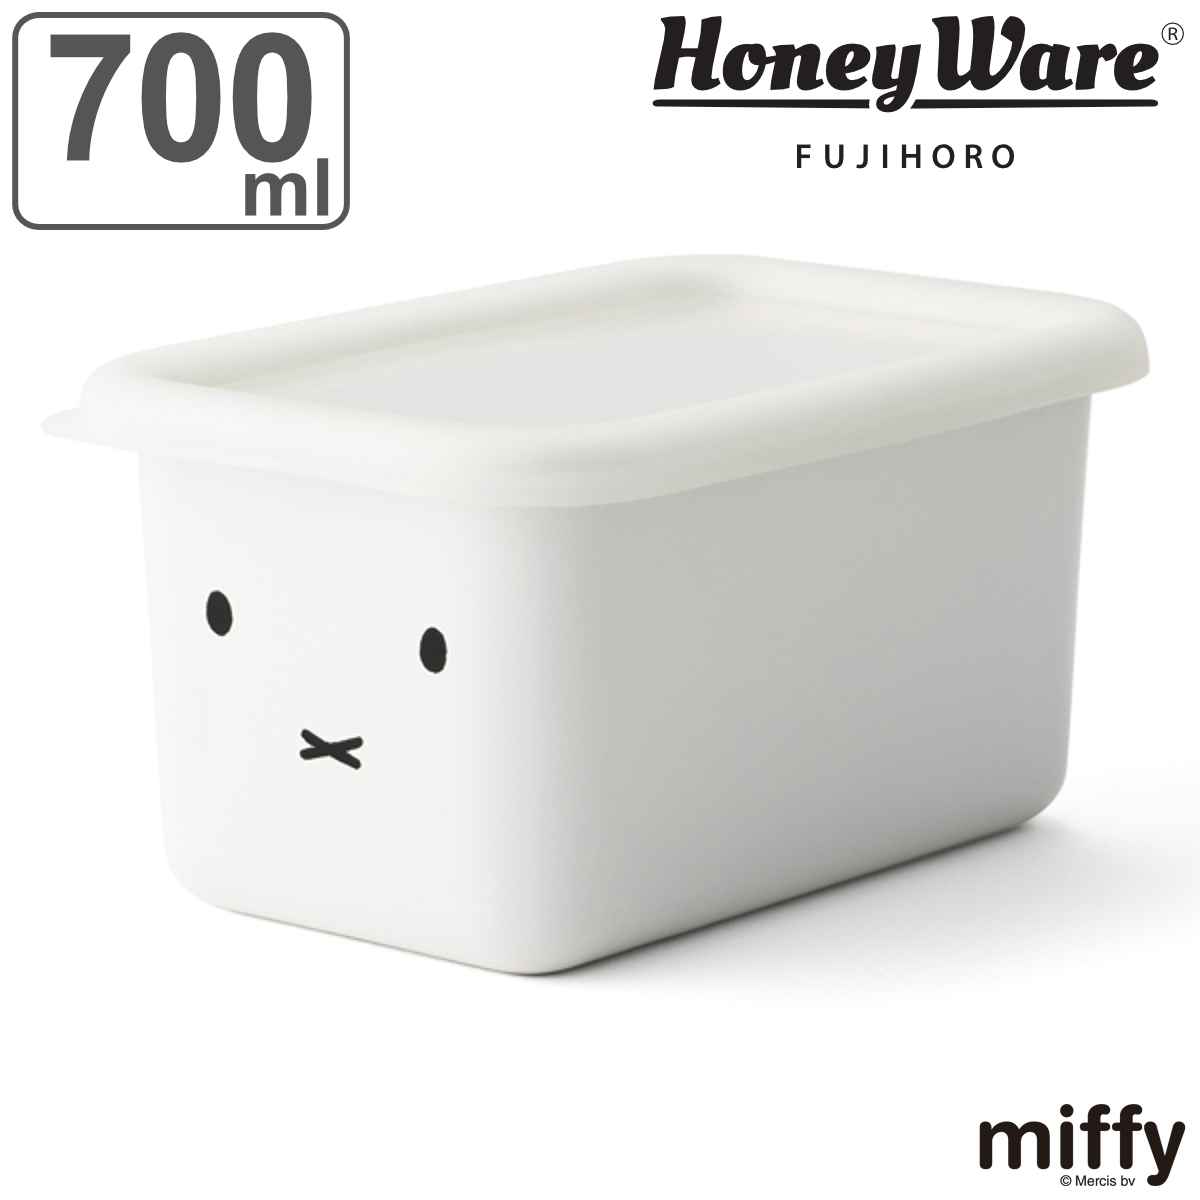 保存容器 ホーロー製 700ml 深型 ミッフィー 富士ホーロー HoneyWere （ ホーロー容器 琺瑯容器 深型容器 食洗機対応 オーブン対応 冷凍